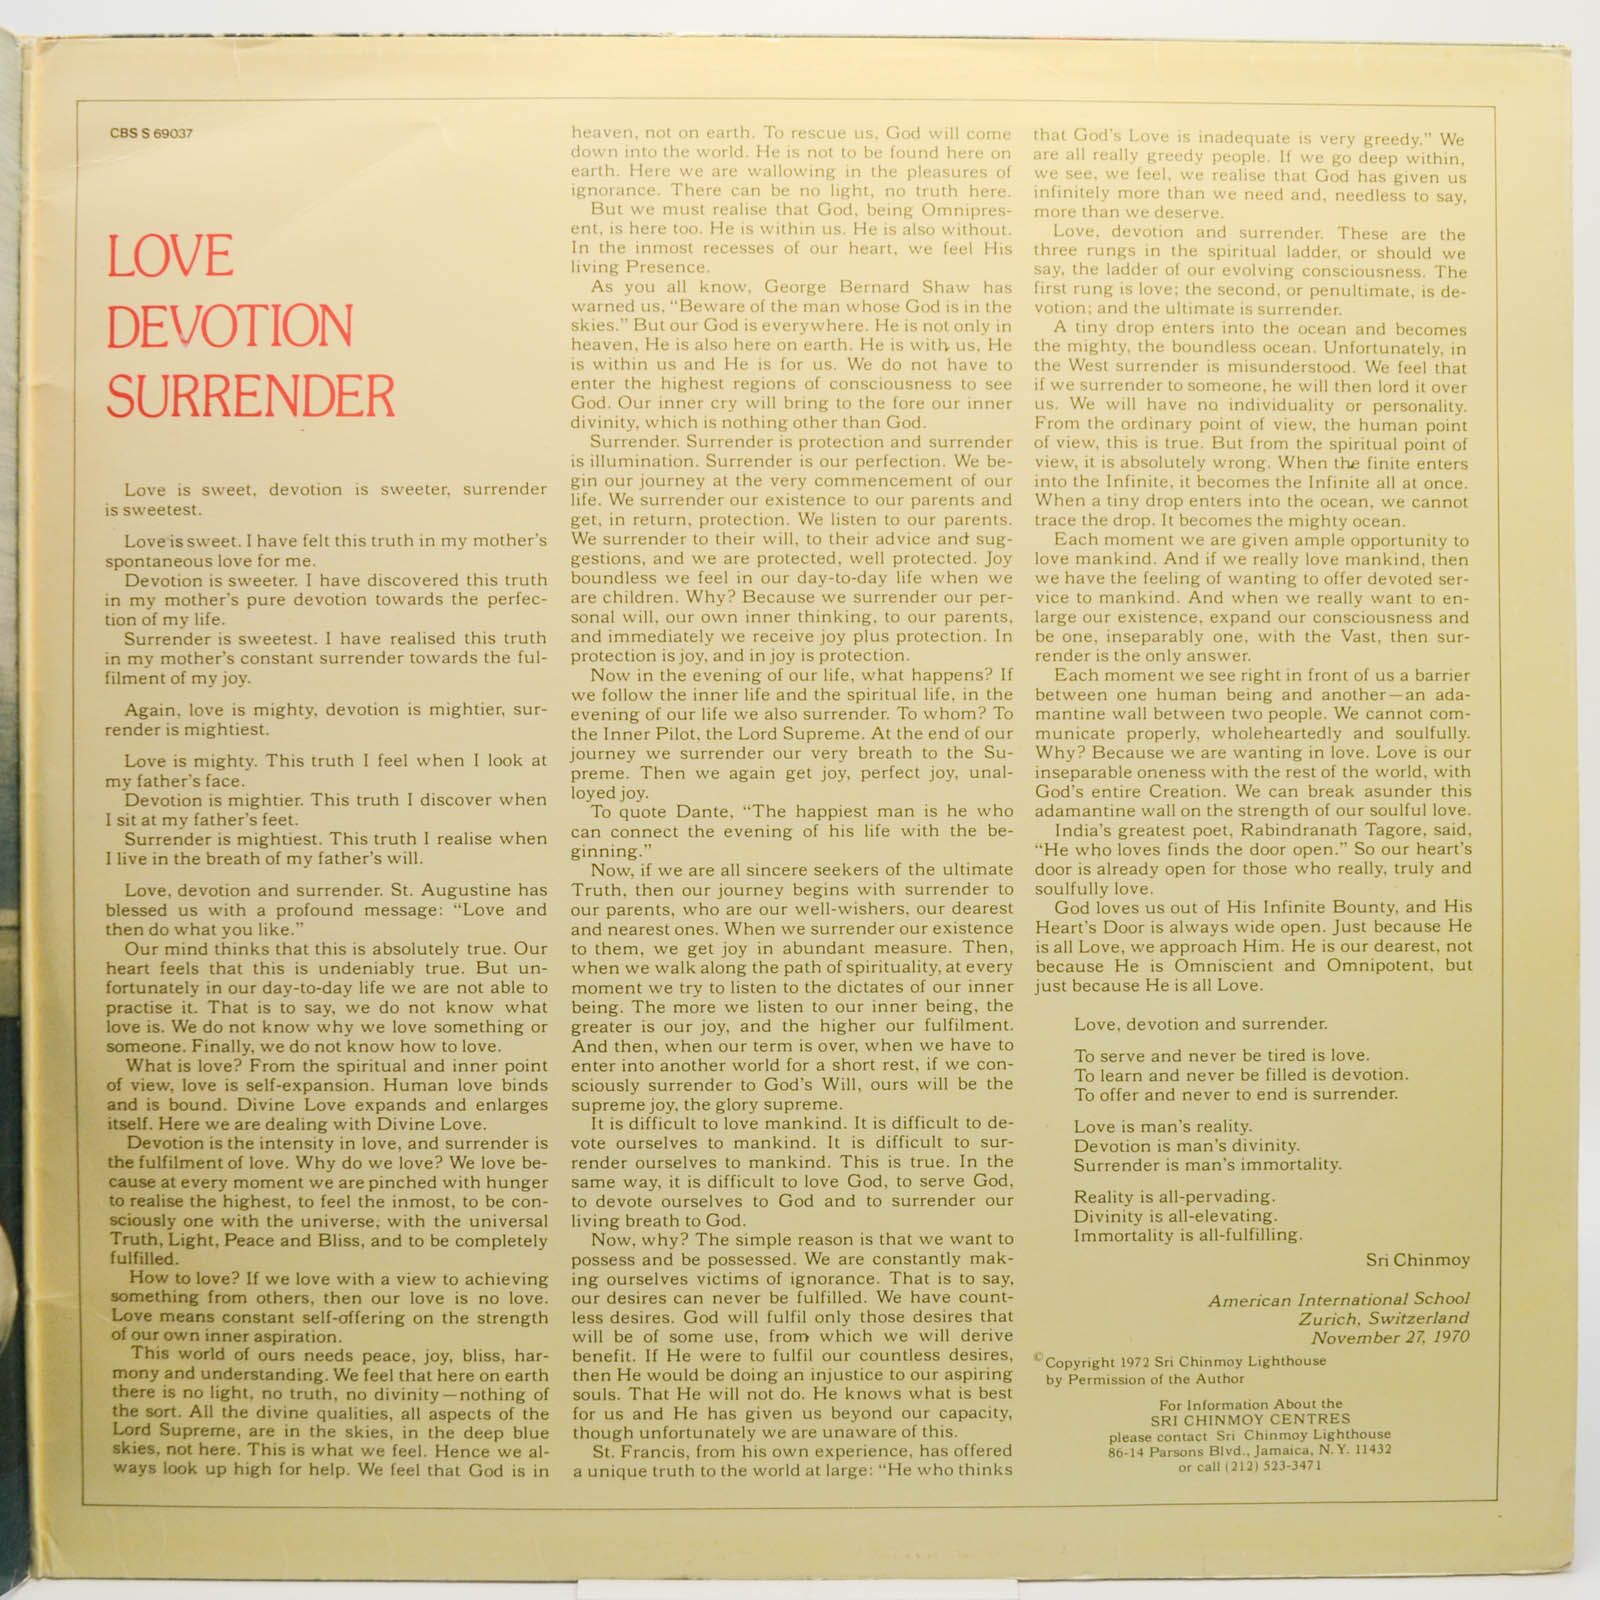 Carlos Santana / Mahavishnu John McLaughlin — Love Devotion Surrender, 1973